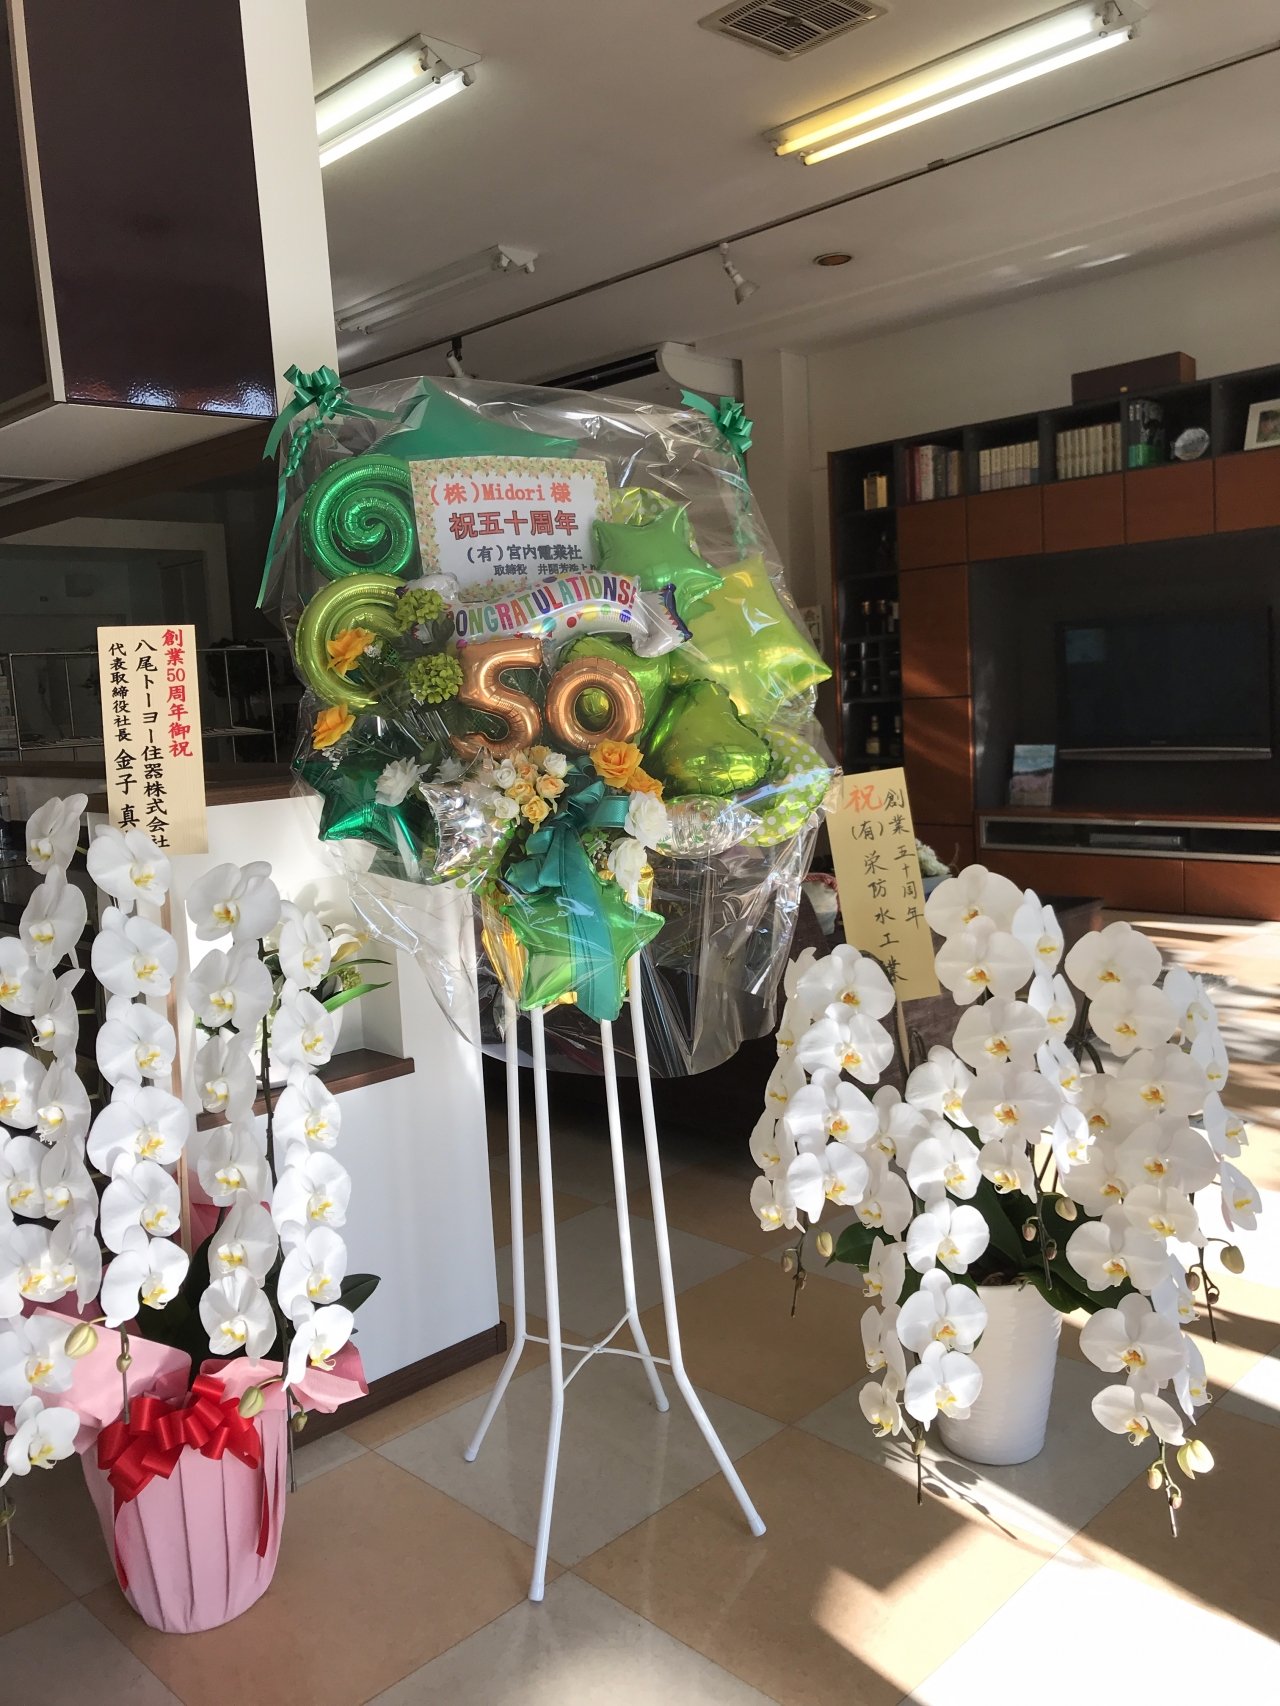 株式会社Midori創業50周年記念祝賀会